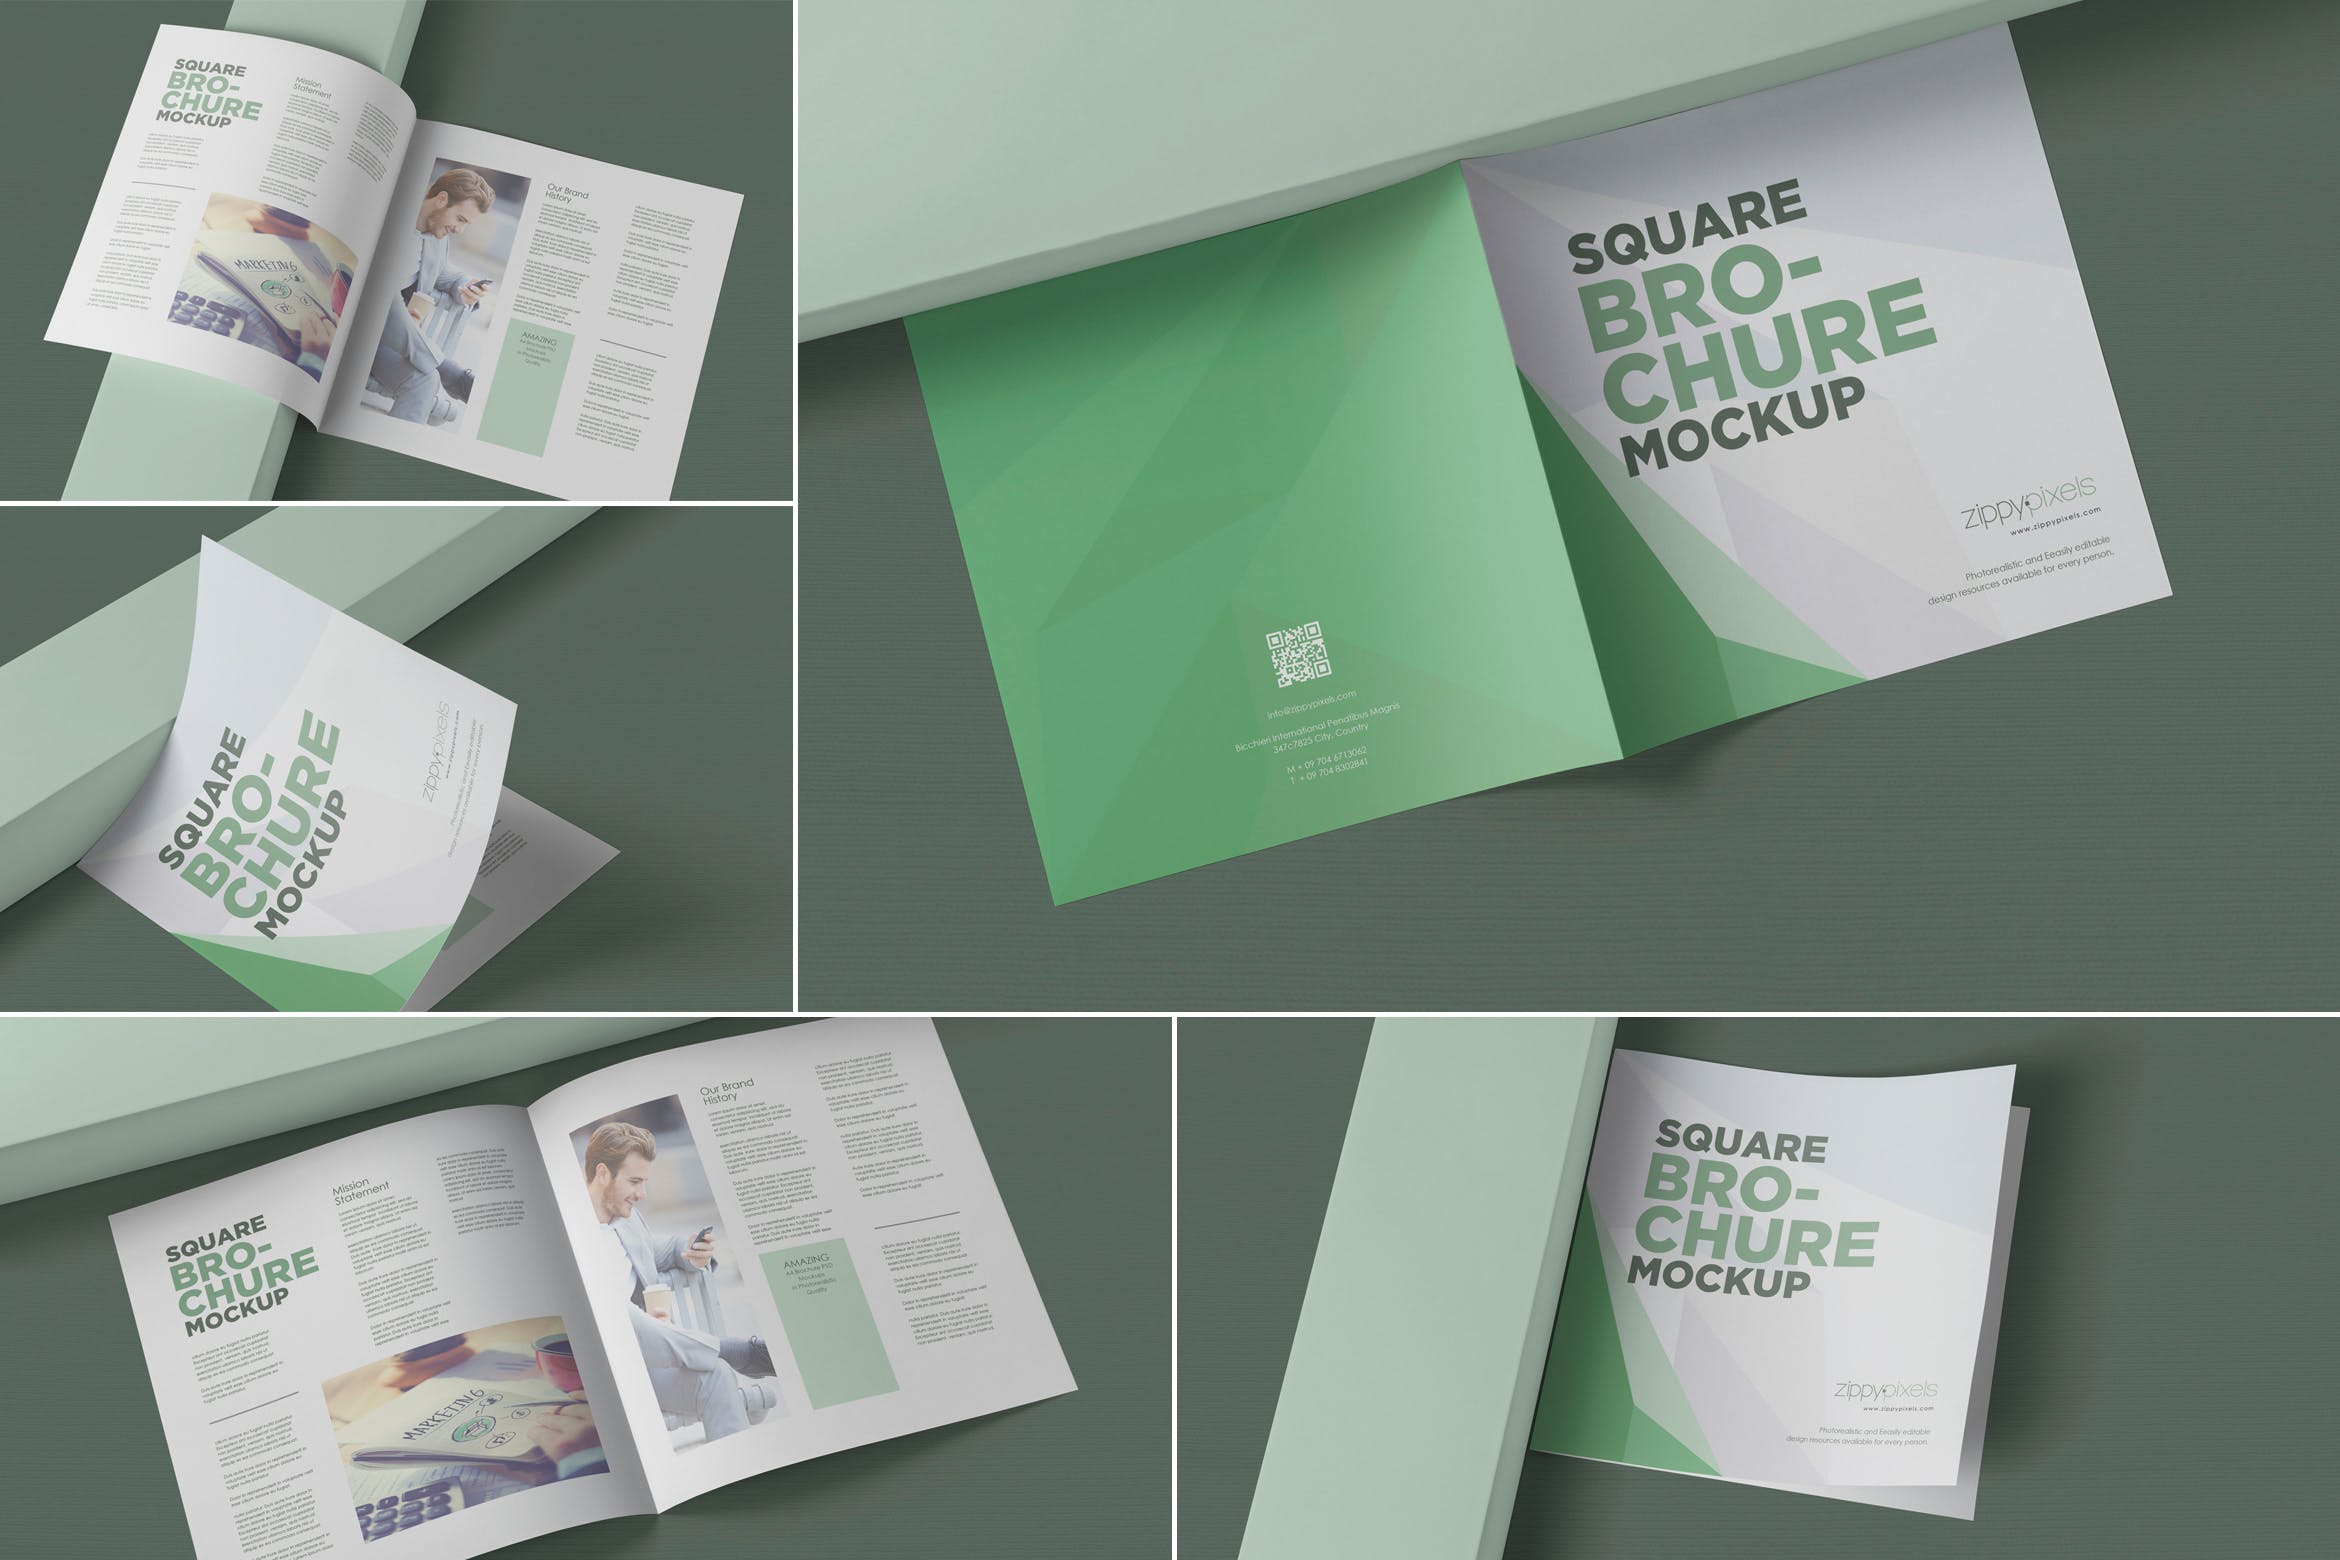 方形对折页宣传手册设计效果图样机第一素材精选 Square Bifold Brochure Mockups插图